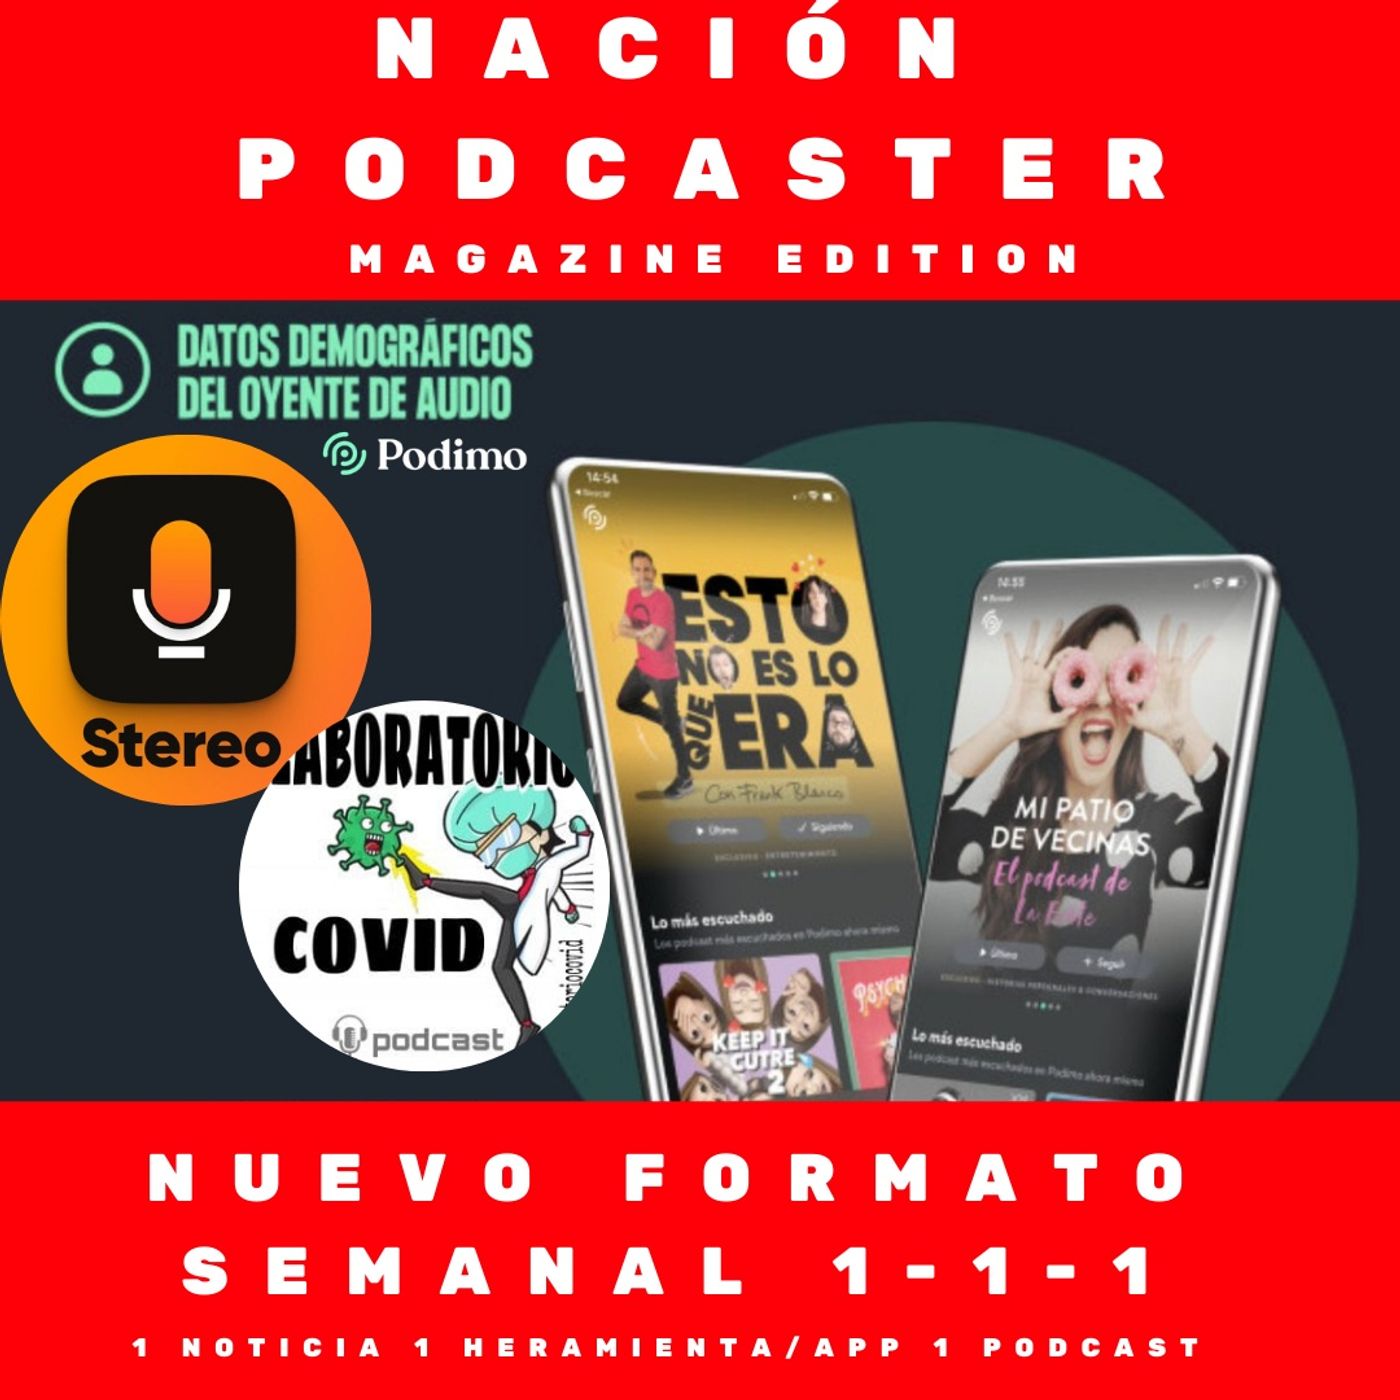 Nación Podcaster magazine edition: estudio @PodimoSpain @app_stereo y labcovidpodcast